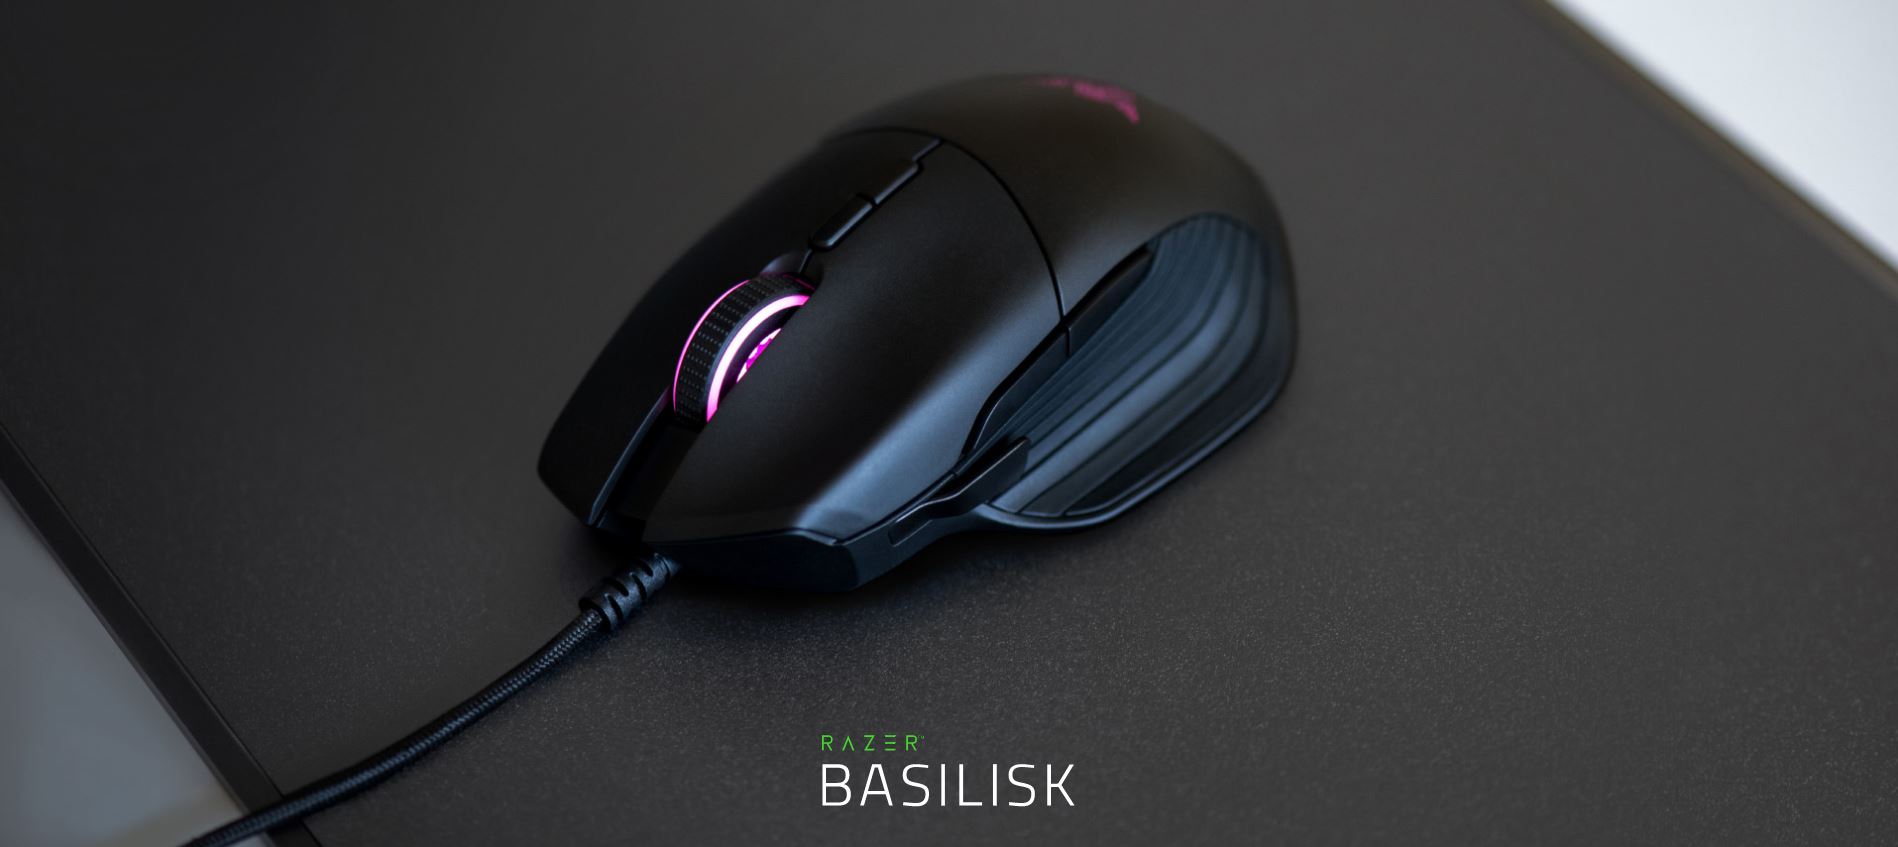 Razer présente la Basilisk V3, une nouvelle version de sa souris